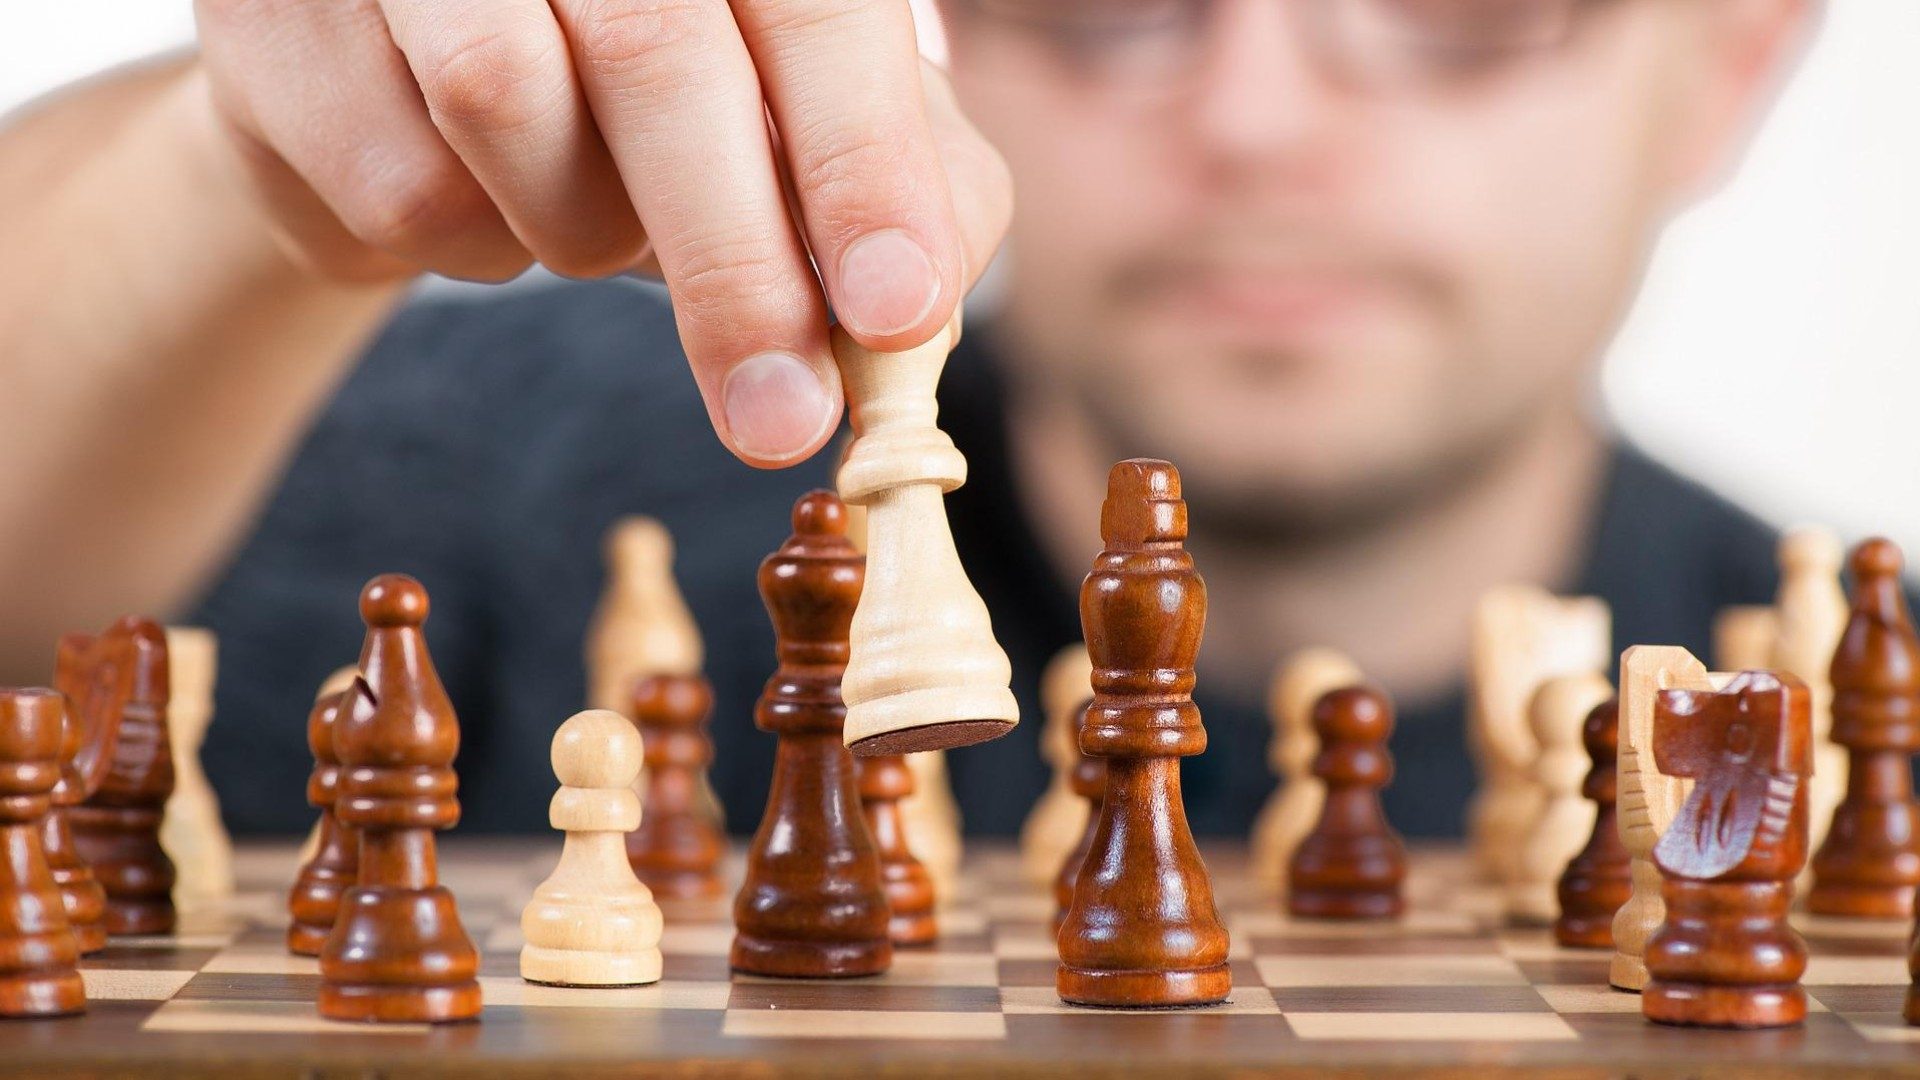 Ein Mann spielt Schach und zieht gerade eine weiße Figur.